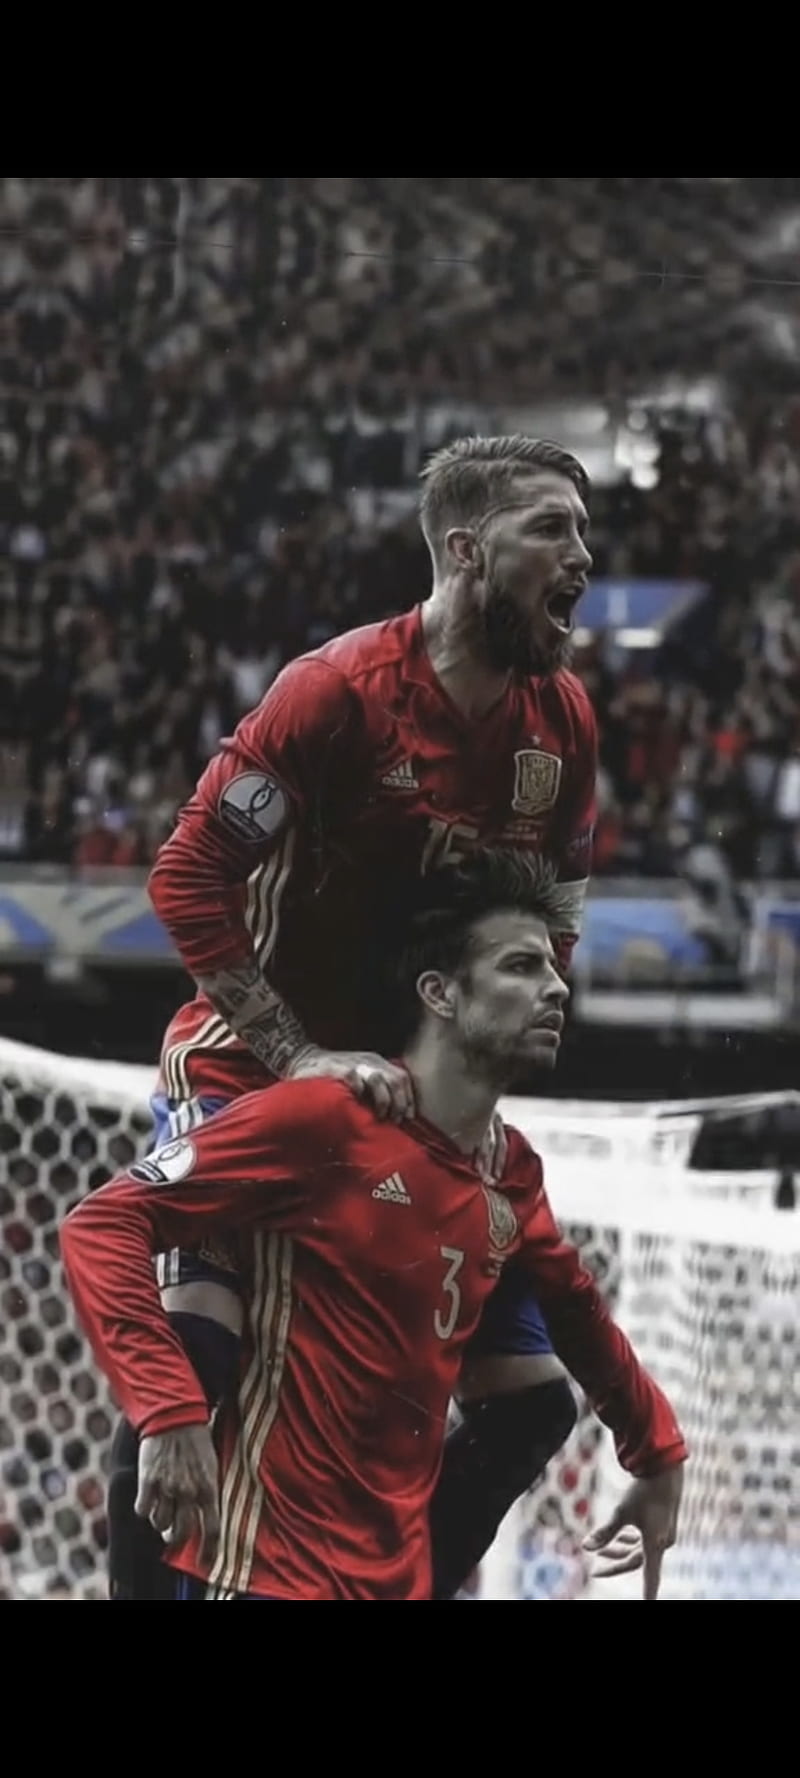 Ramos y pique, españa, futbol, HD phone wallpaper